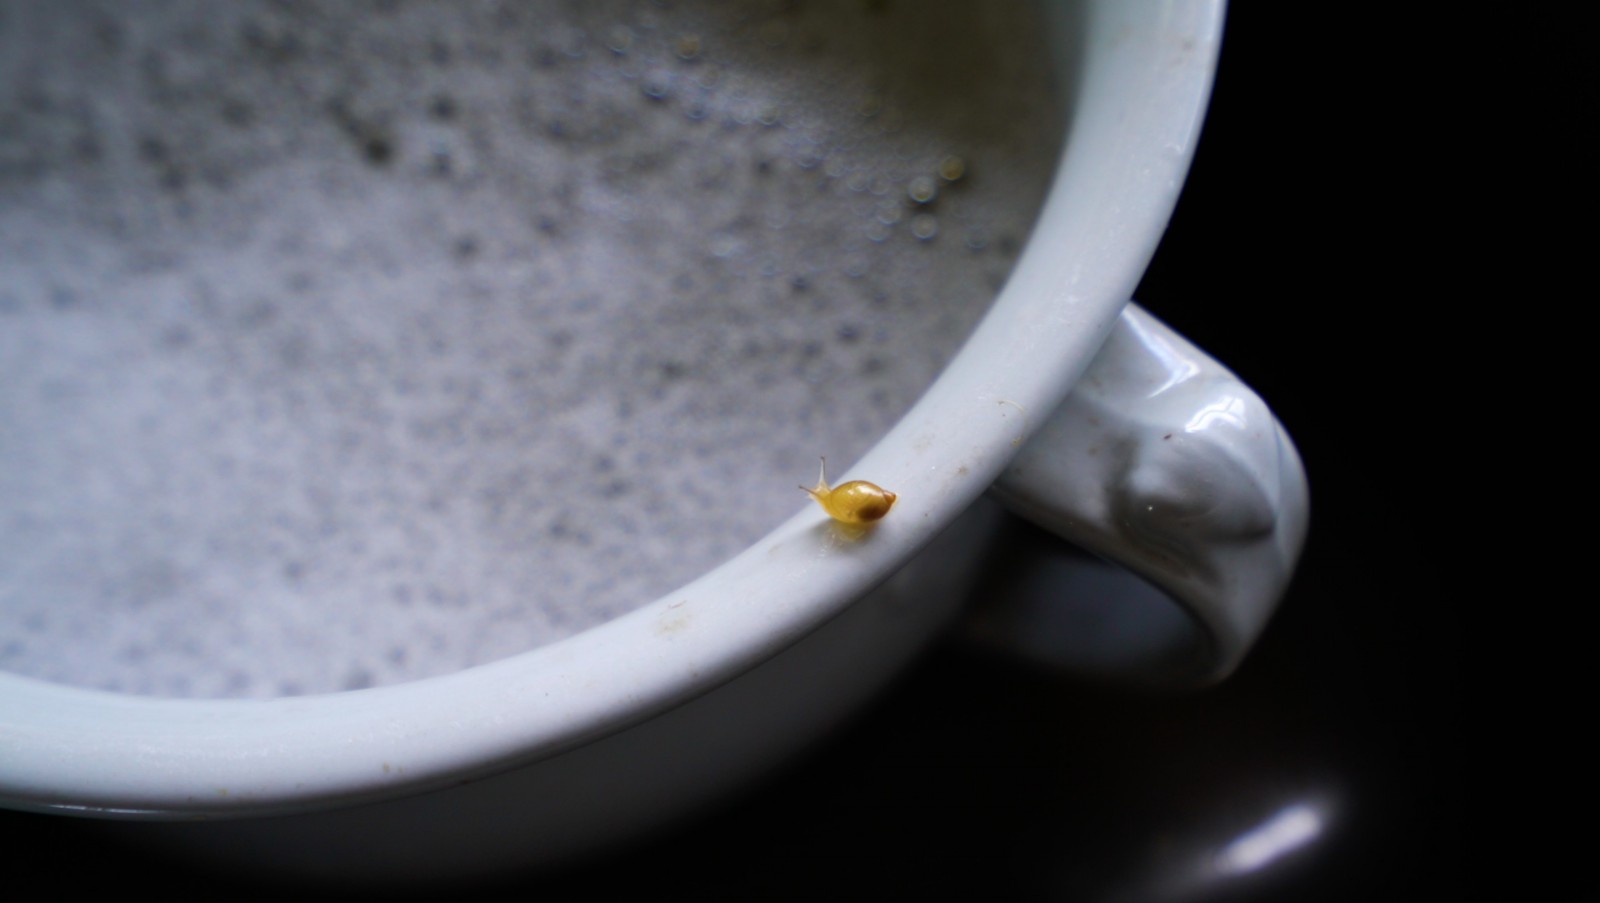 image of a tiny snail on a rim